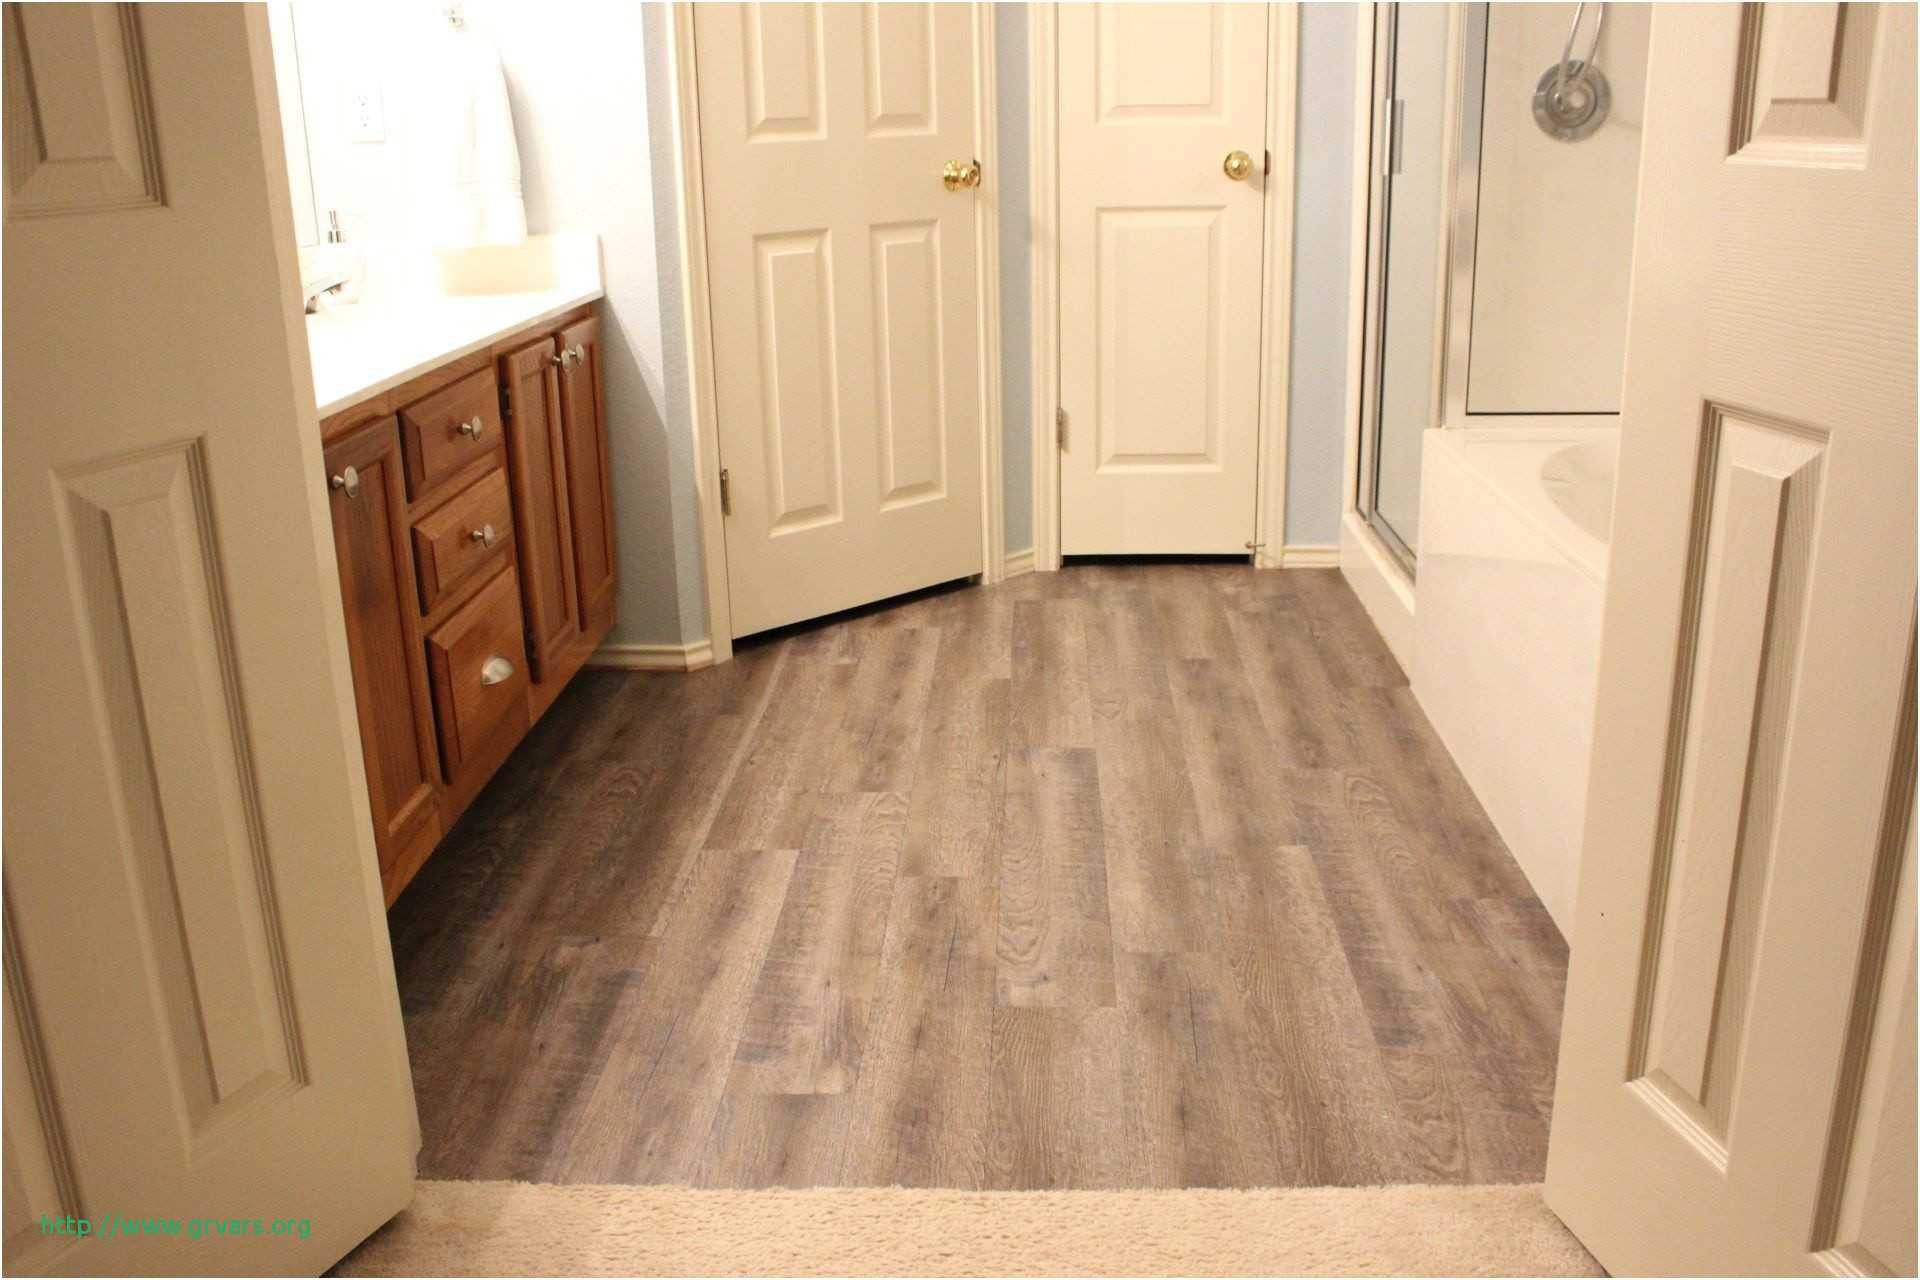 30 Perfect Pet Urine Cleaner For Hardwood Floors Unique Flooring